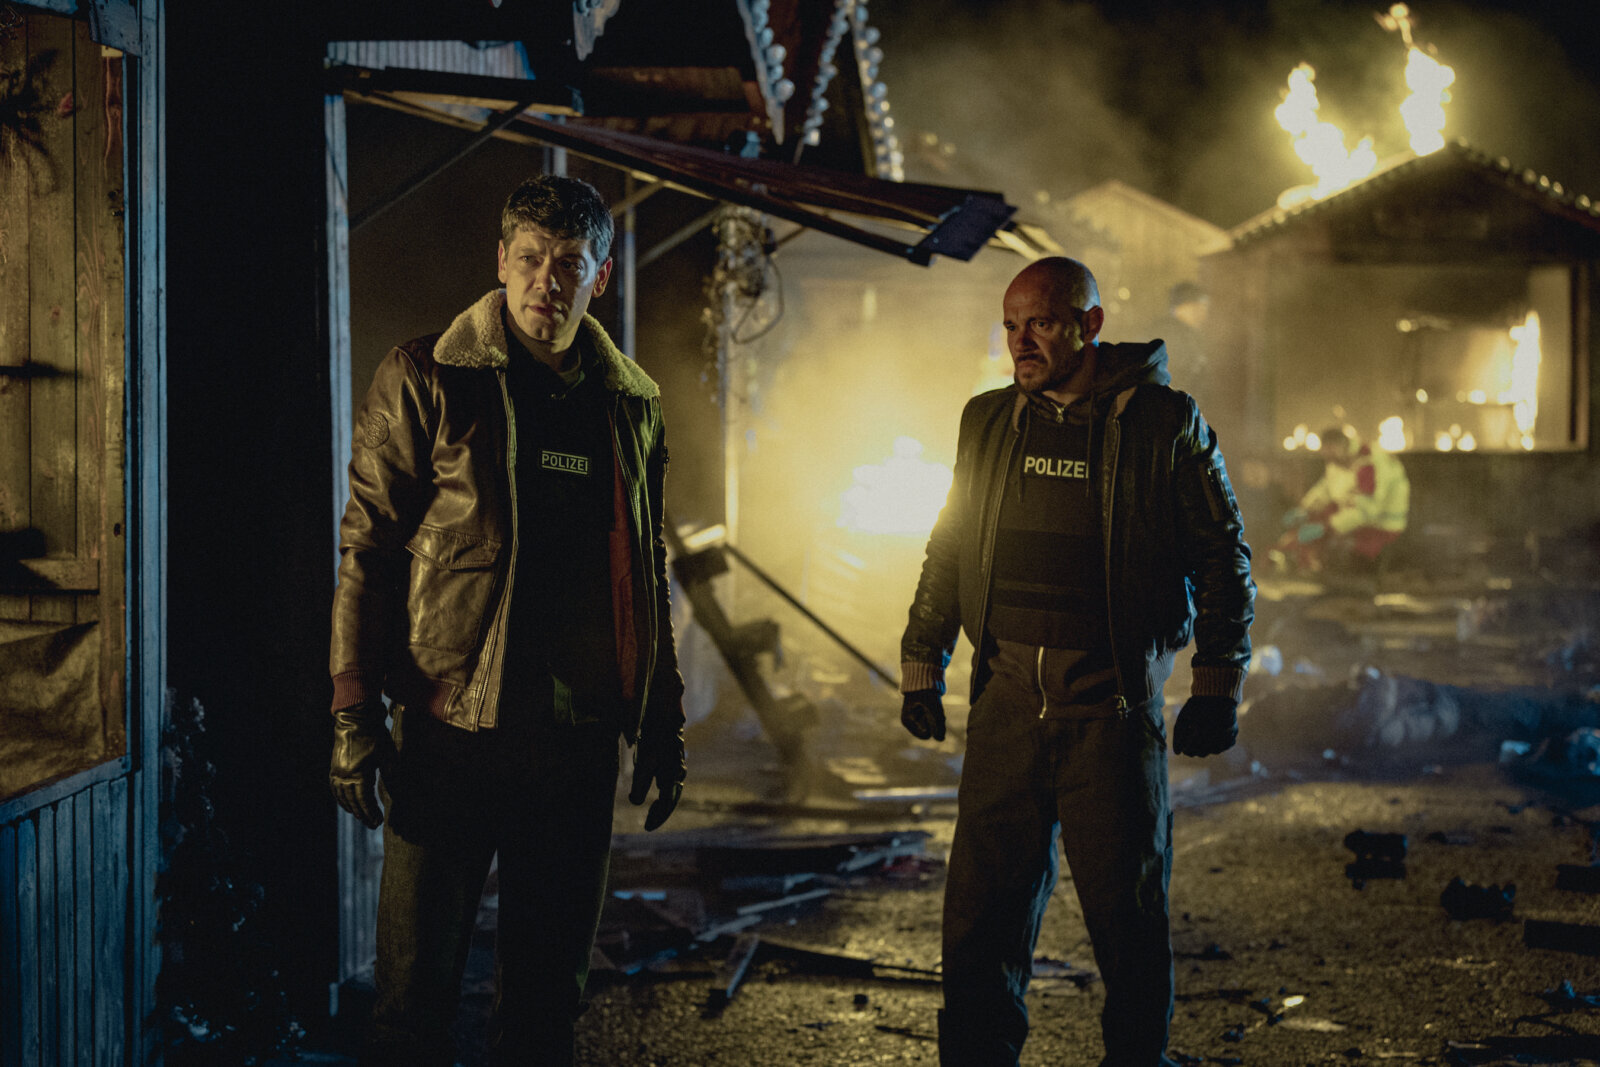 Carlo Ljubek und Antonio Wannek spielen in der neuen deutschen Netflix-Thriller-Serie "Schlafende Hunde" zwei Polizisten.